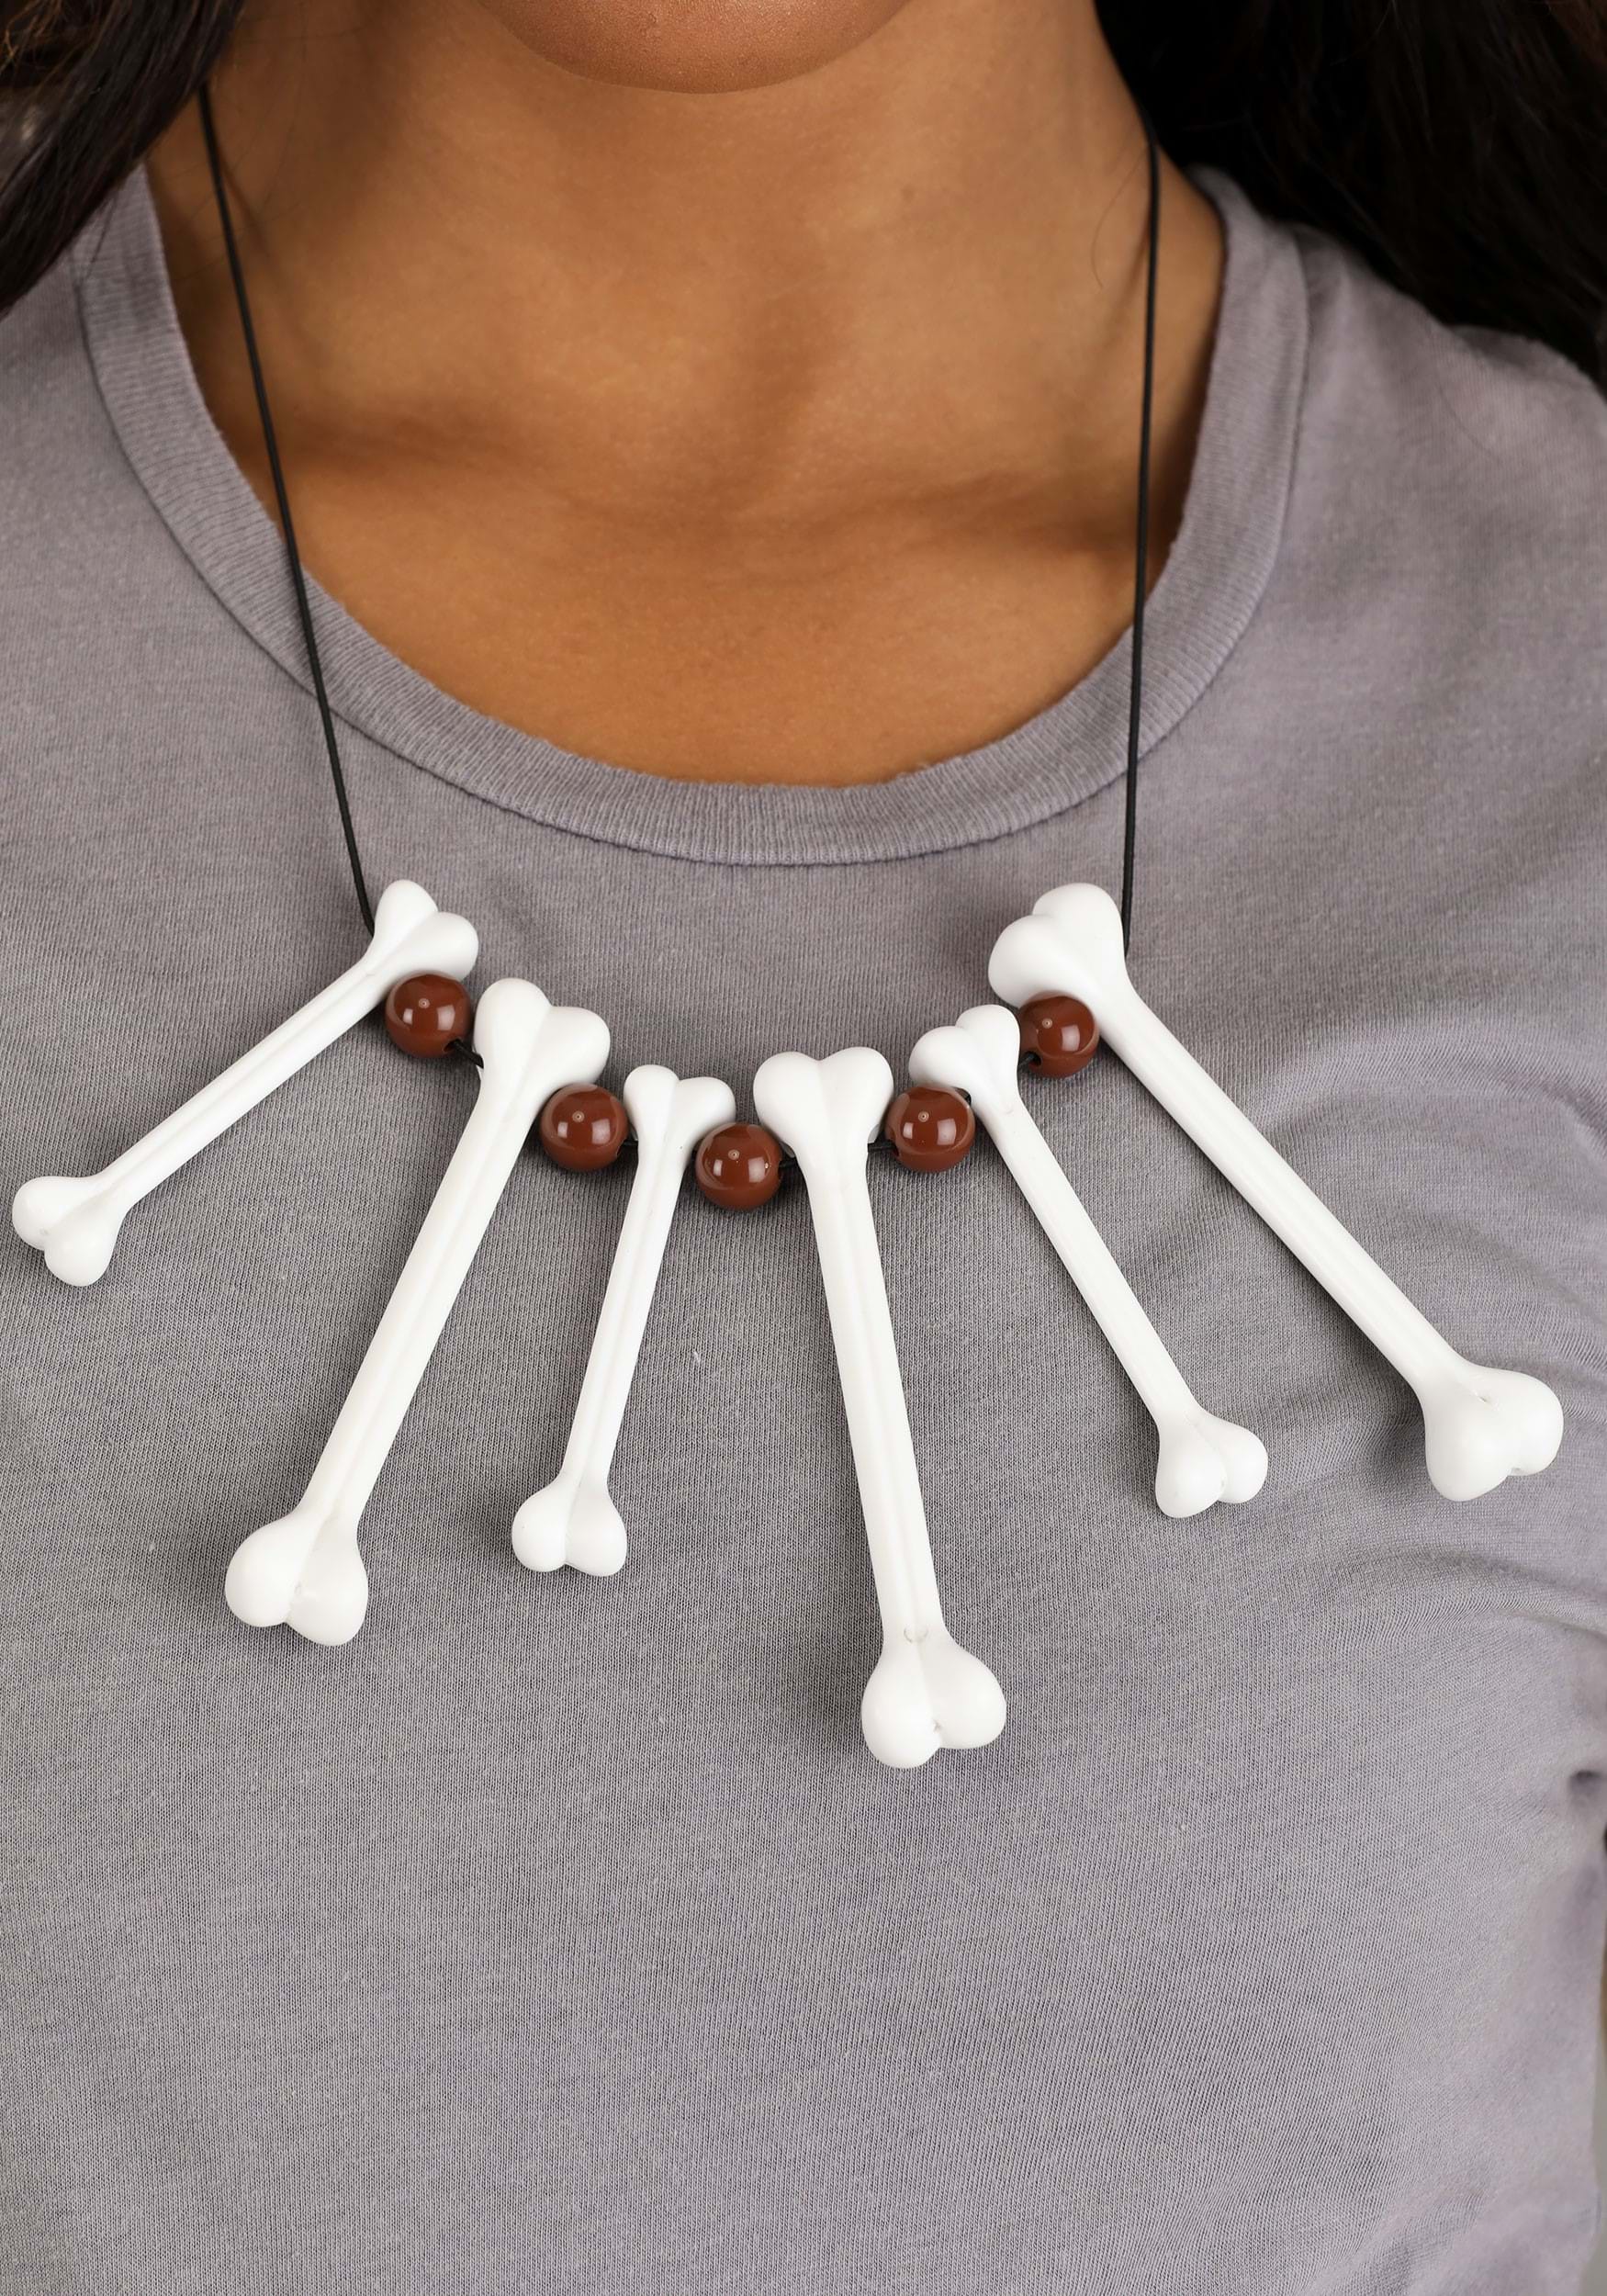 Classic Bone Necklace Accessory